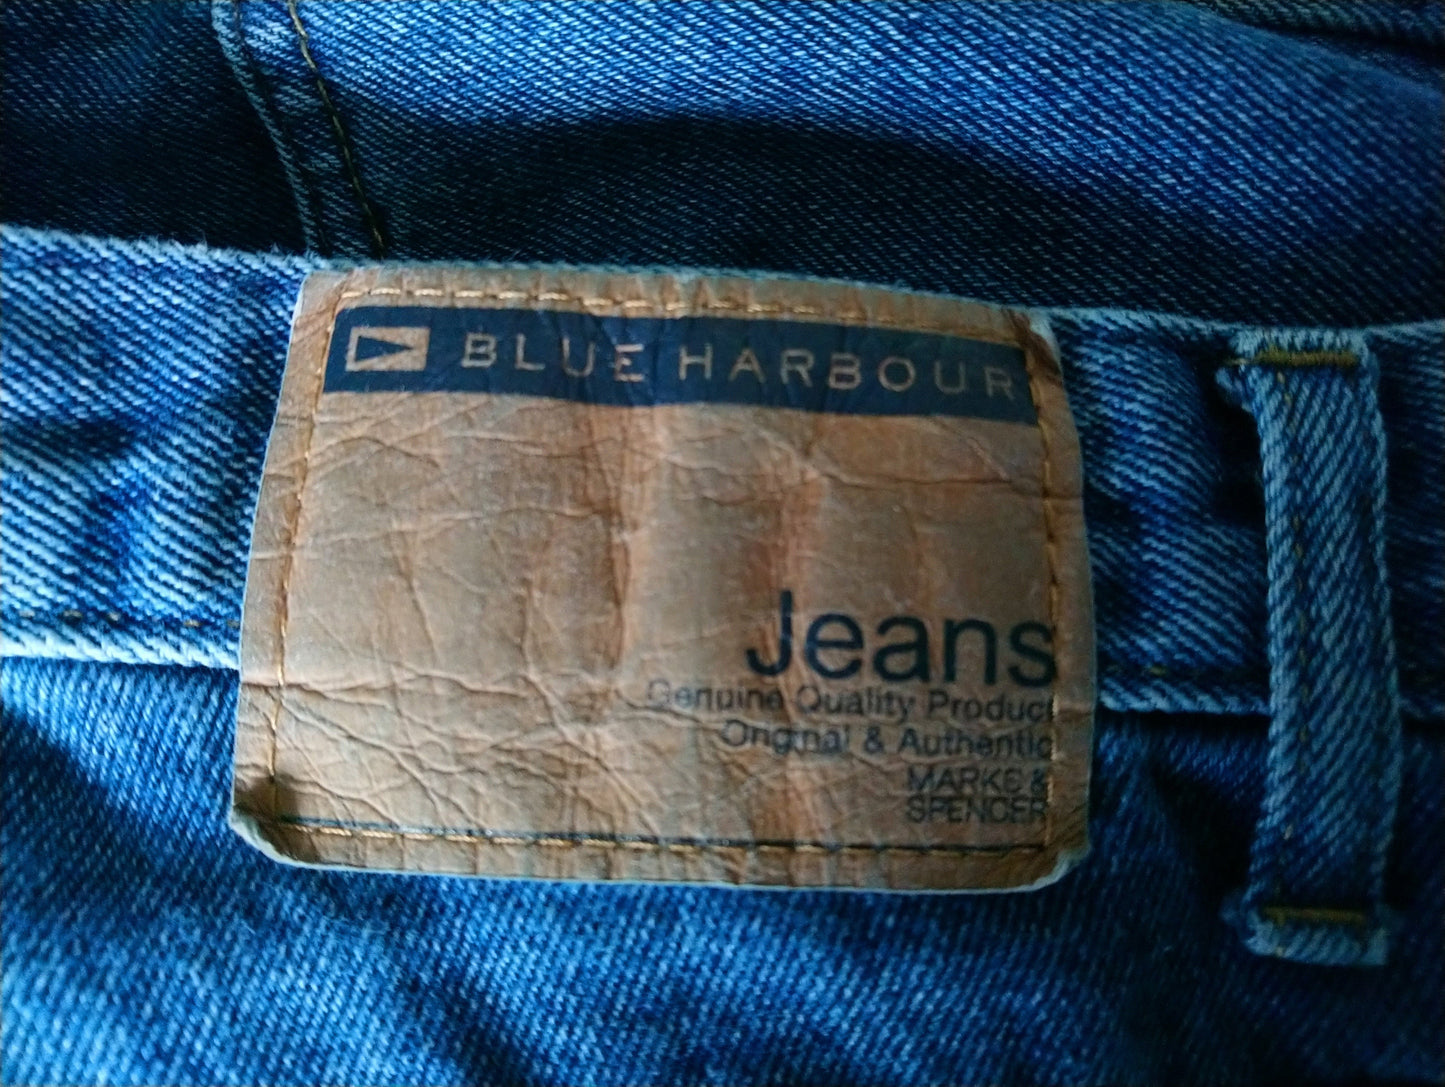 Jean Blue Harbour. Couleur bleue. Taille W32 - L30.